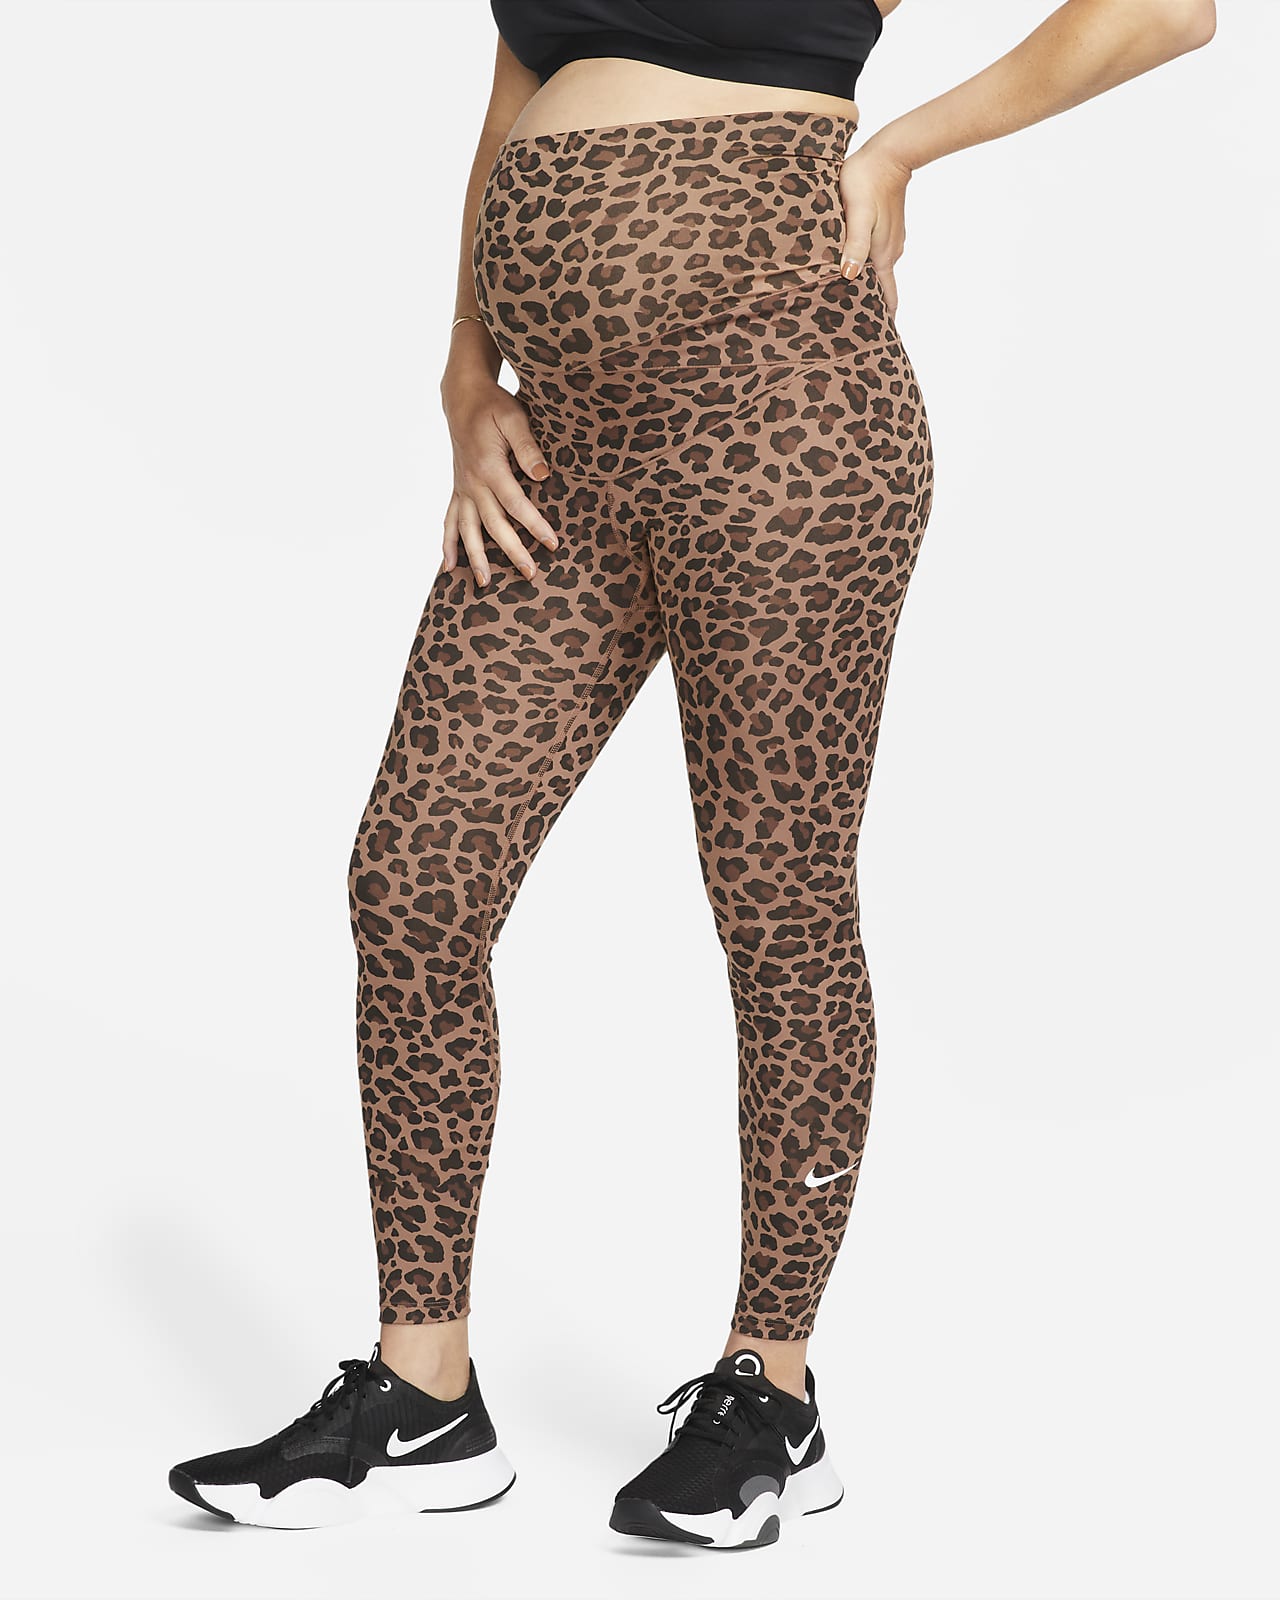 wijsheid Distributie Concreet Nike One (M) Legging met hoge taille en luipaardprint voor dames  (zwangerschapskleding). Nike NL